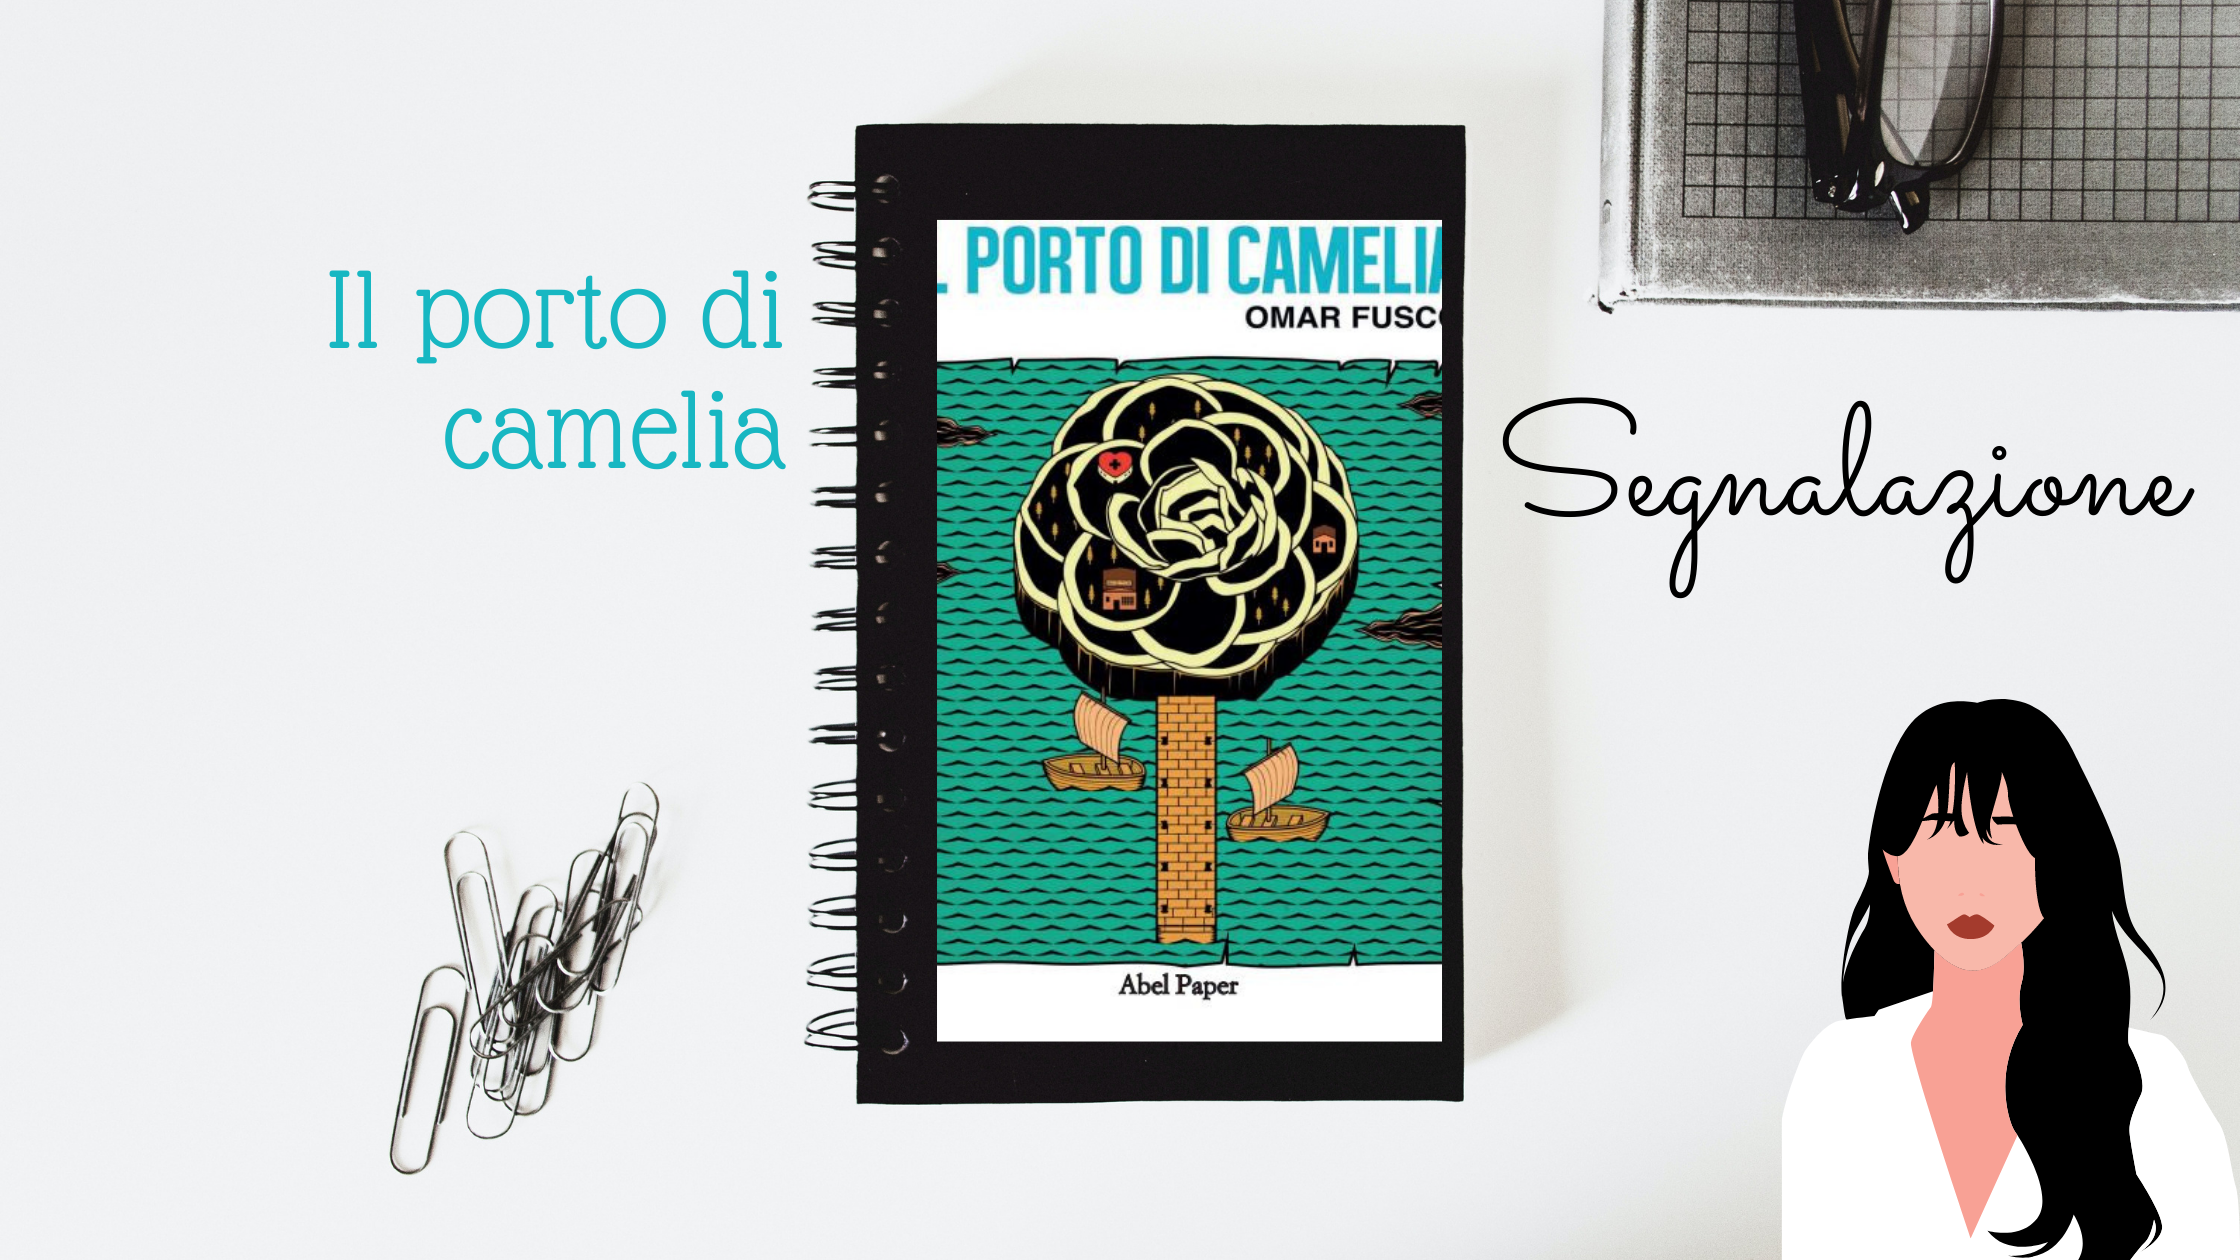 Cover Reveal – “Chiedimi un desiderio” di Chiara Cavini Benedetti!